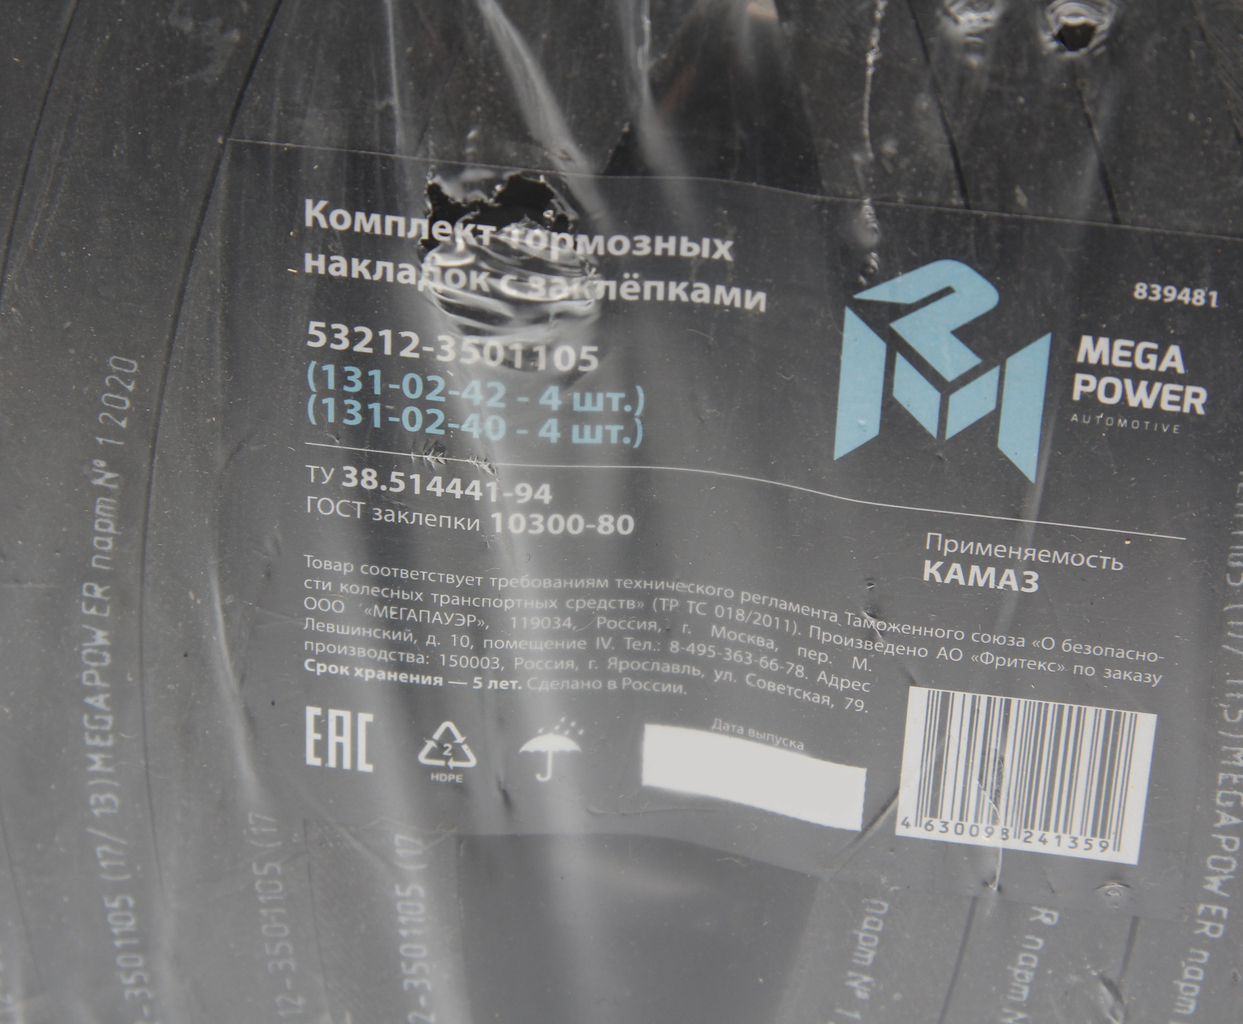 Накладка тормозной колодки КАМАЗ сверленая расточен. комплект 8шт. с заклепками, 350-33-007, MEGAPOWER